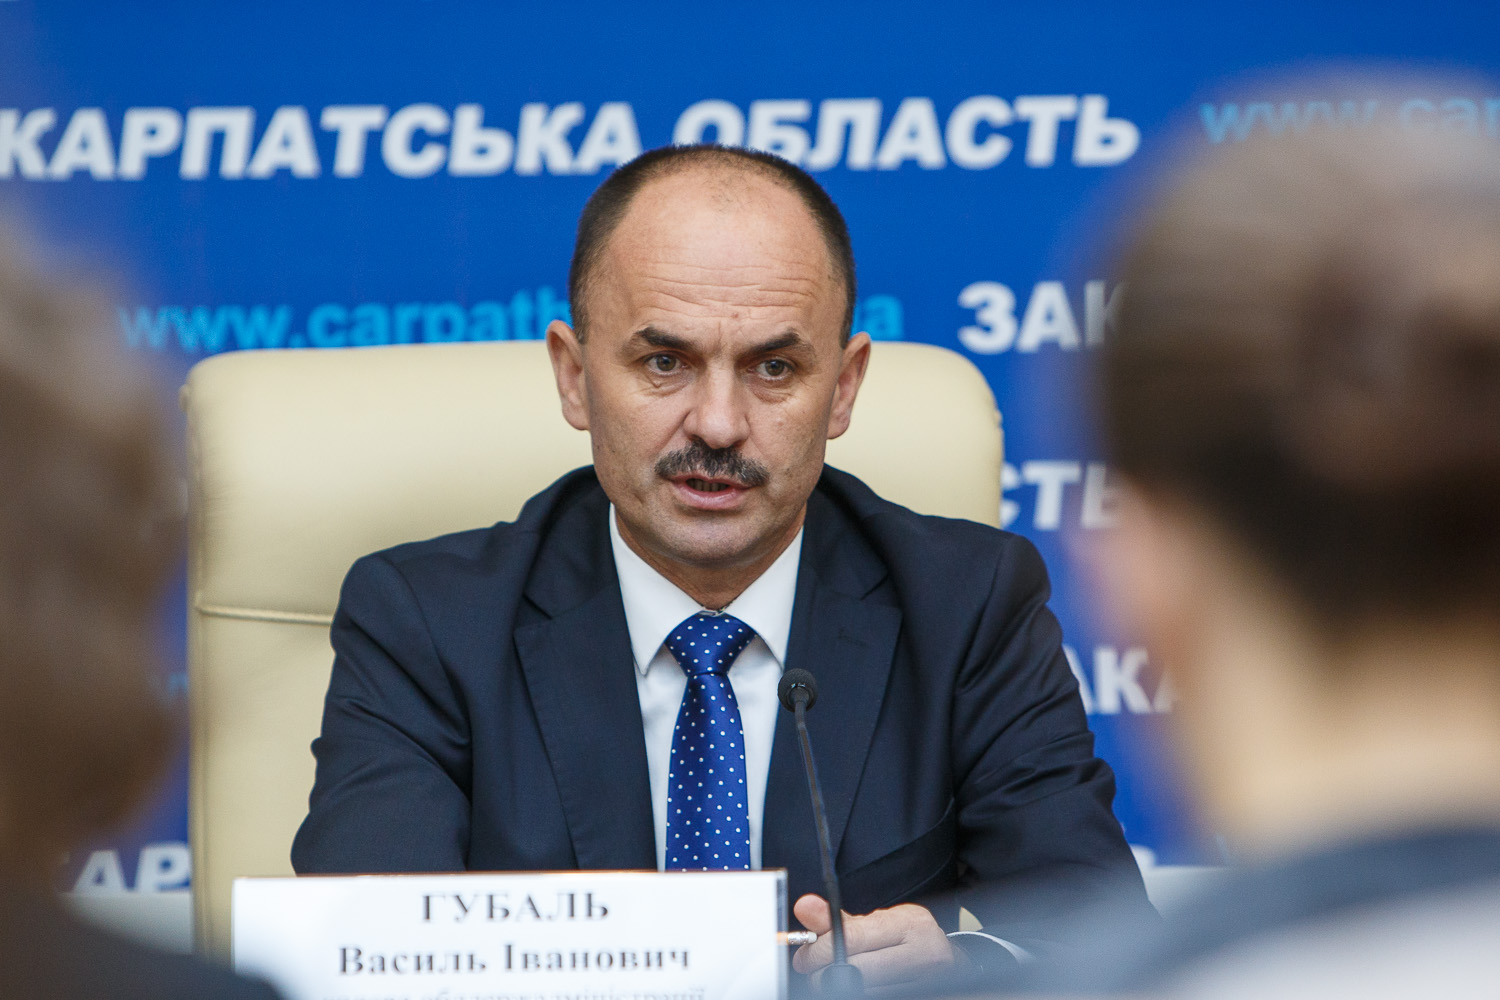 У середу, 29 жовтня, голова Закарпатської ОДА Василь Губаль прокоментував інформацію, поширену в окремих обласних ЗМІ стосовно його звільнення із посади губернатора.